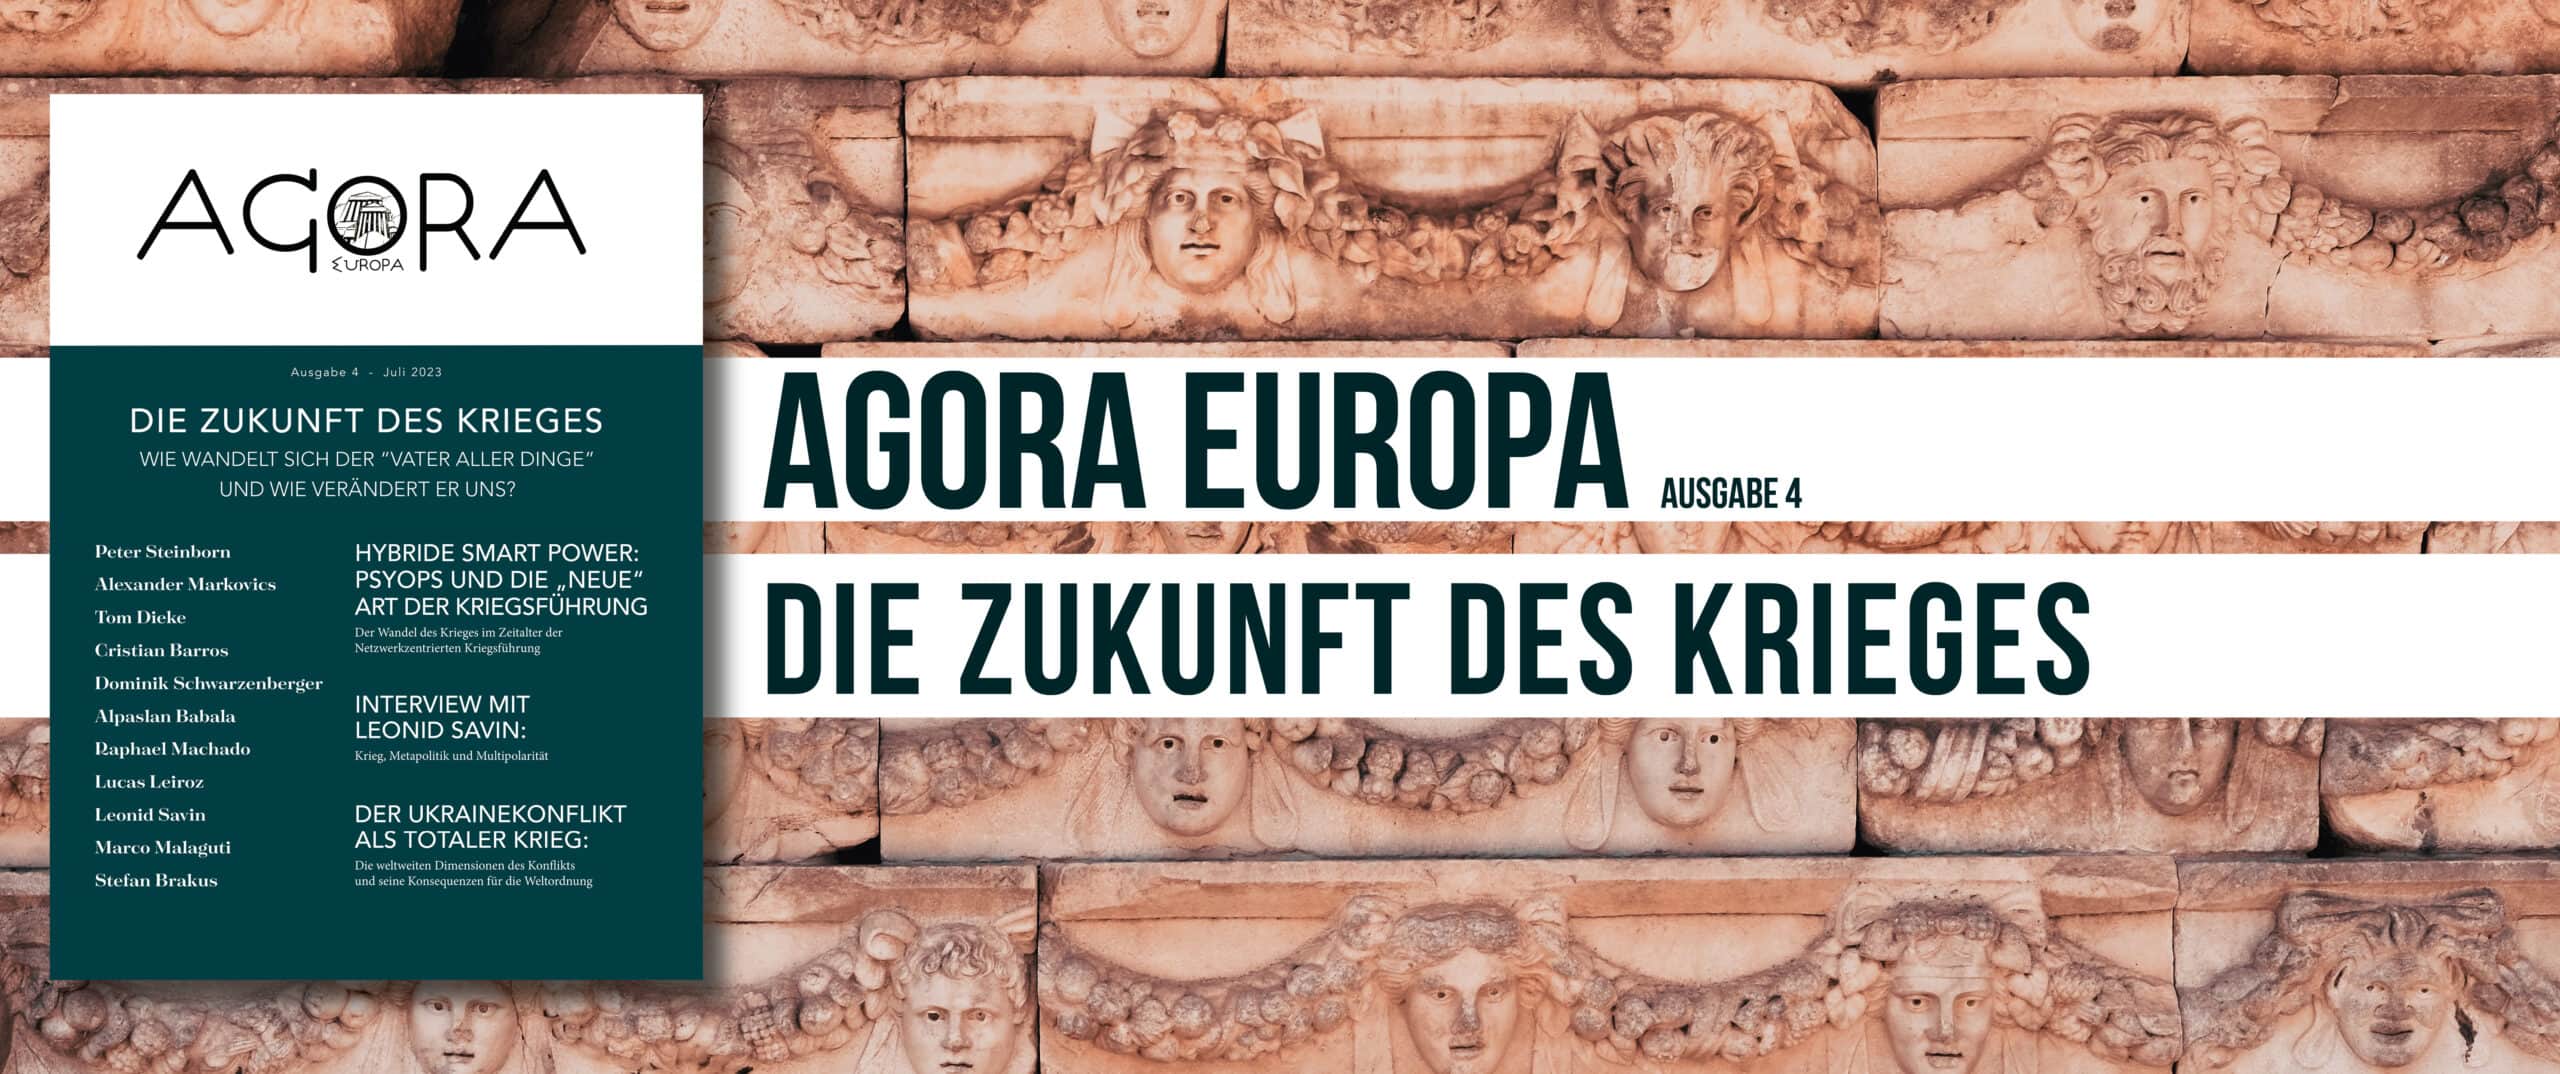 Agora Europa - Die Zukunft des Krieges